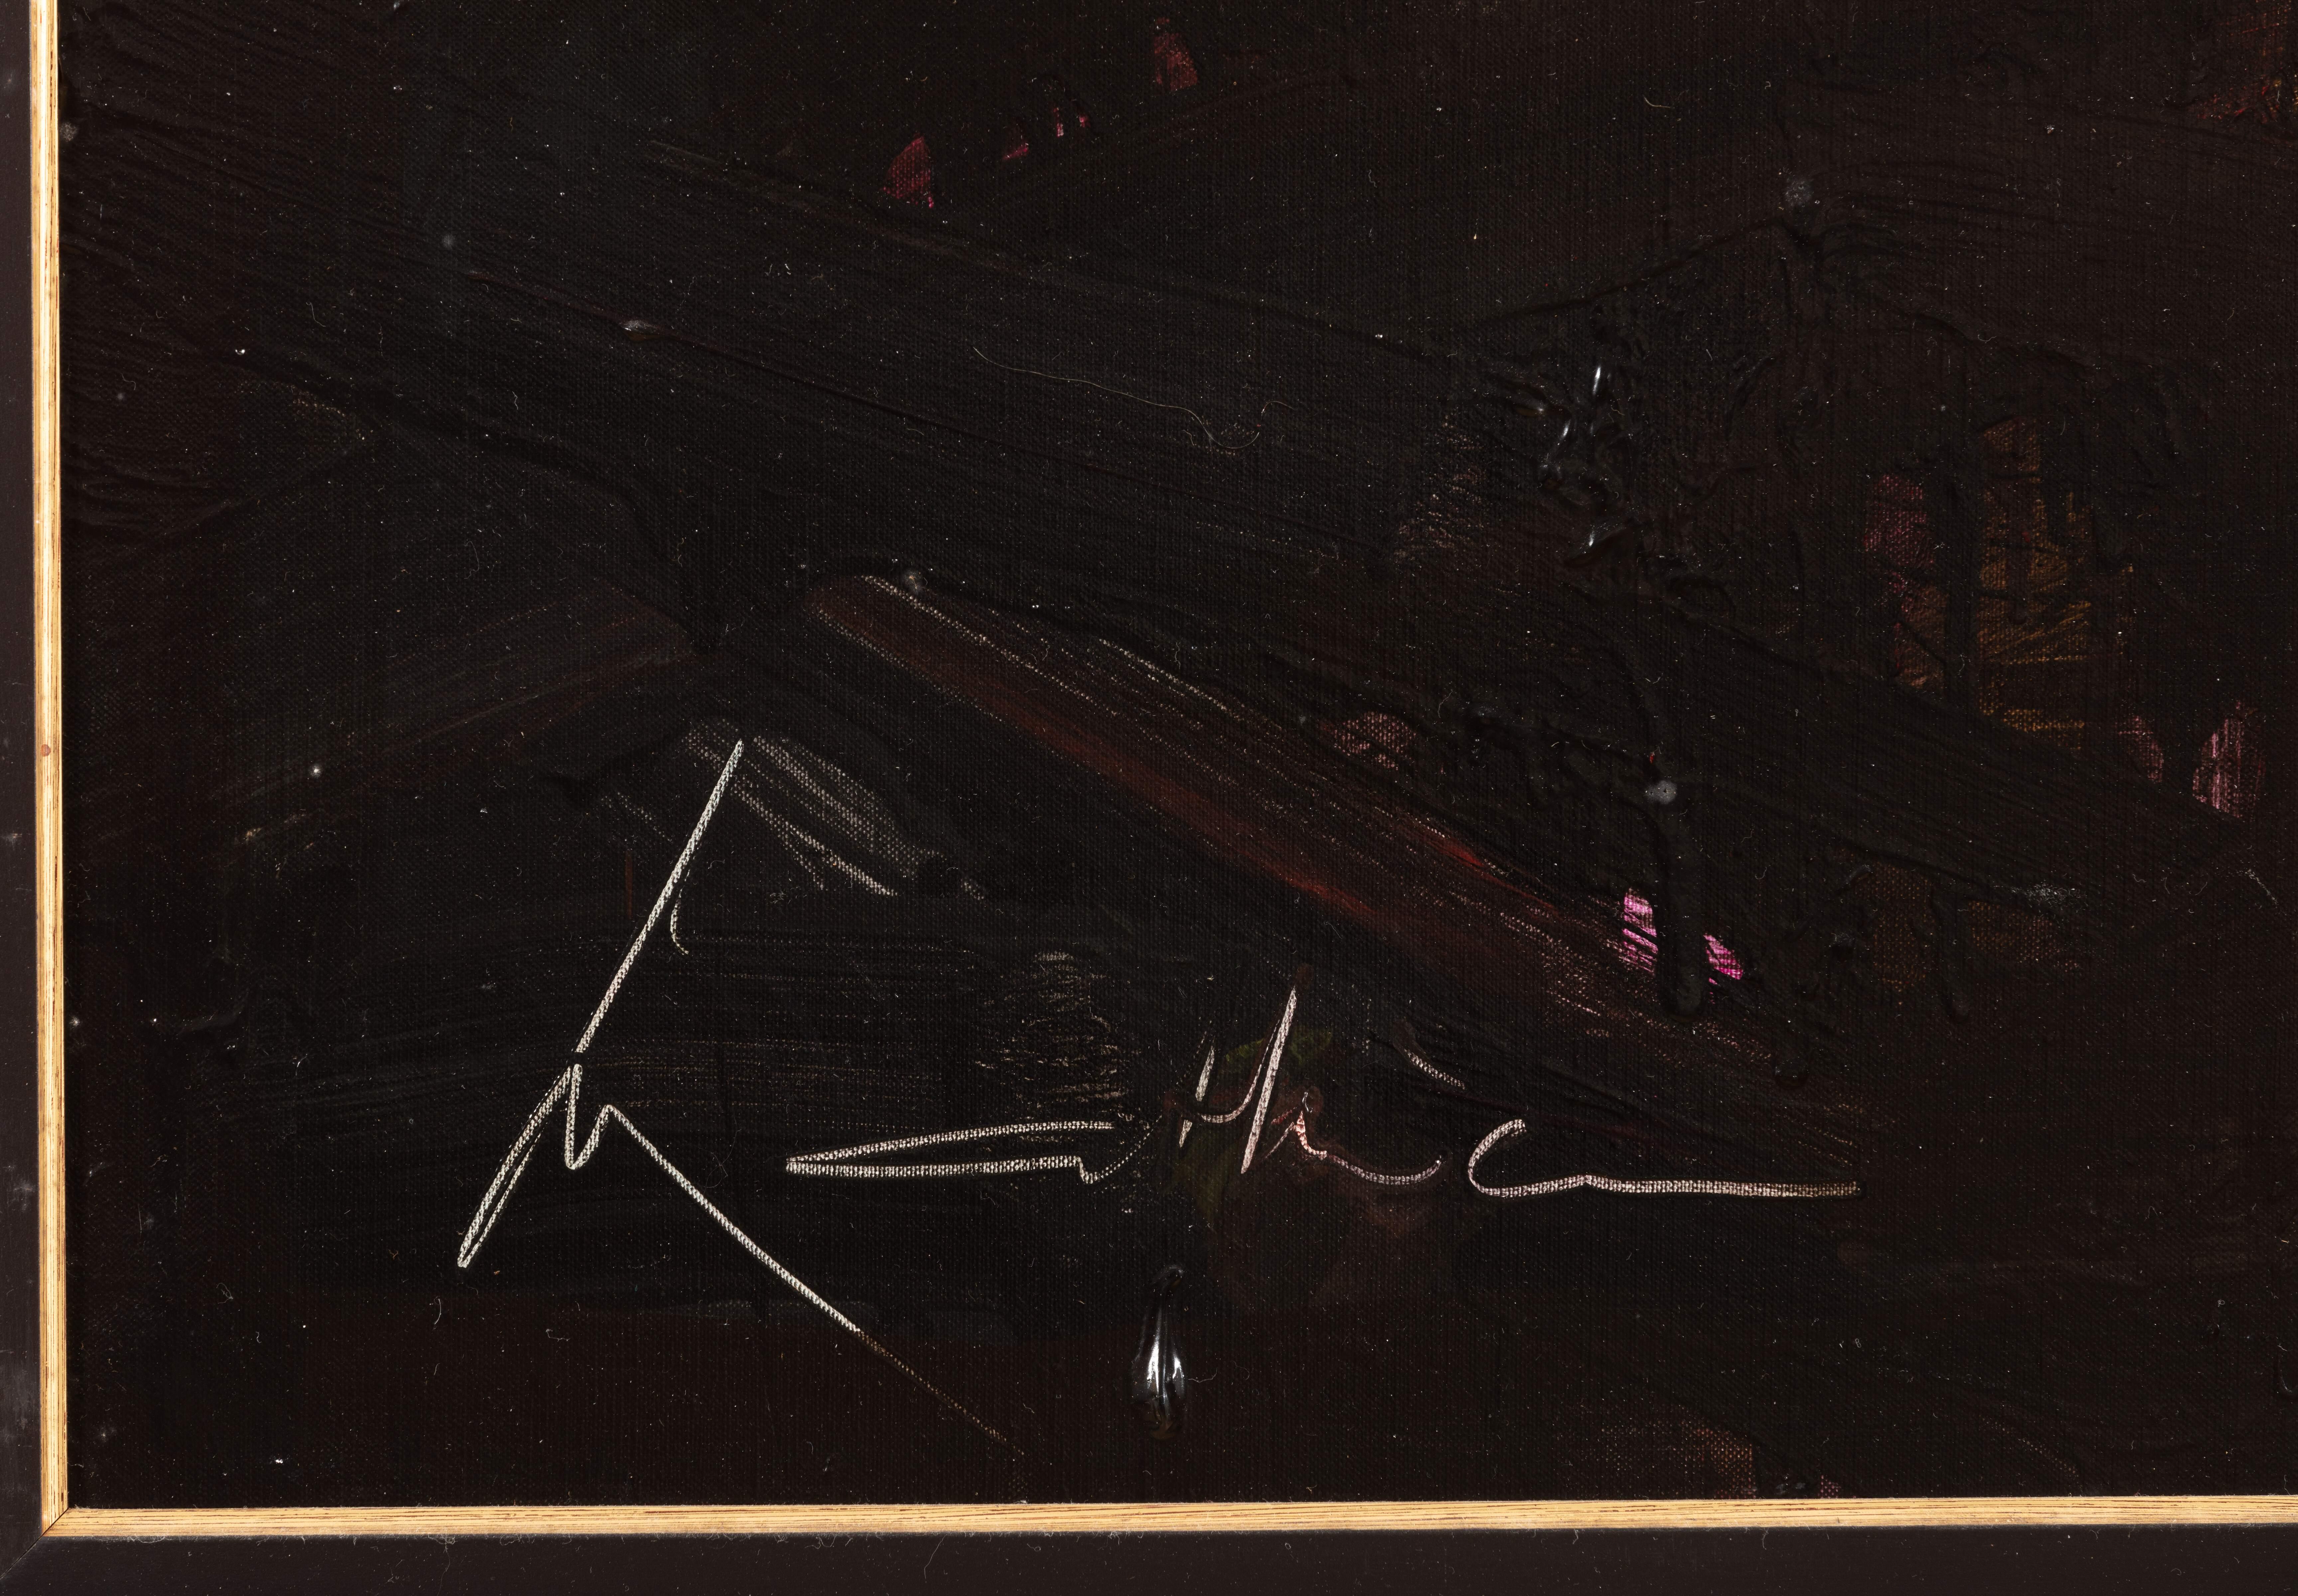 Georges Mathieu (1921 - 2012)
L’horizon mensonger
Alkyde sur toile / Alkyd on canvas
Signé en bas à gauche, titré au dos / Signed lower left and titles on the back
Circa 1990
Size : 146 x 114 cm / 57.48 x 44.88 inches

Certificat d'authenticité du